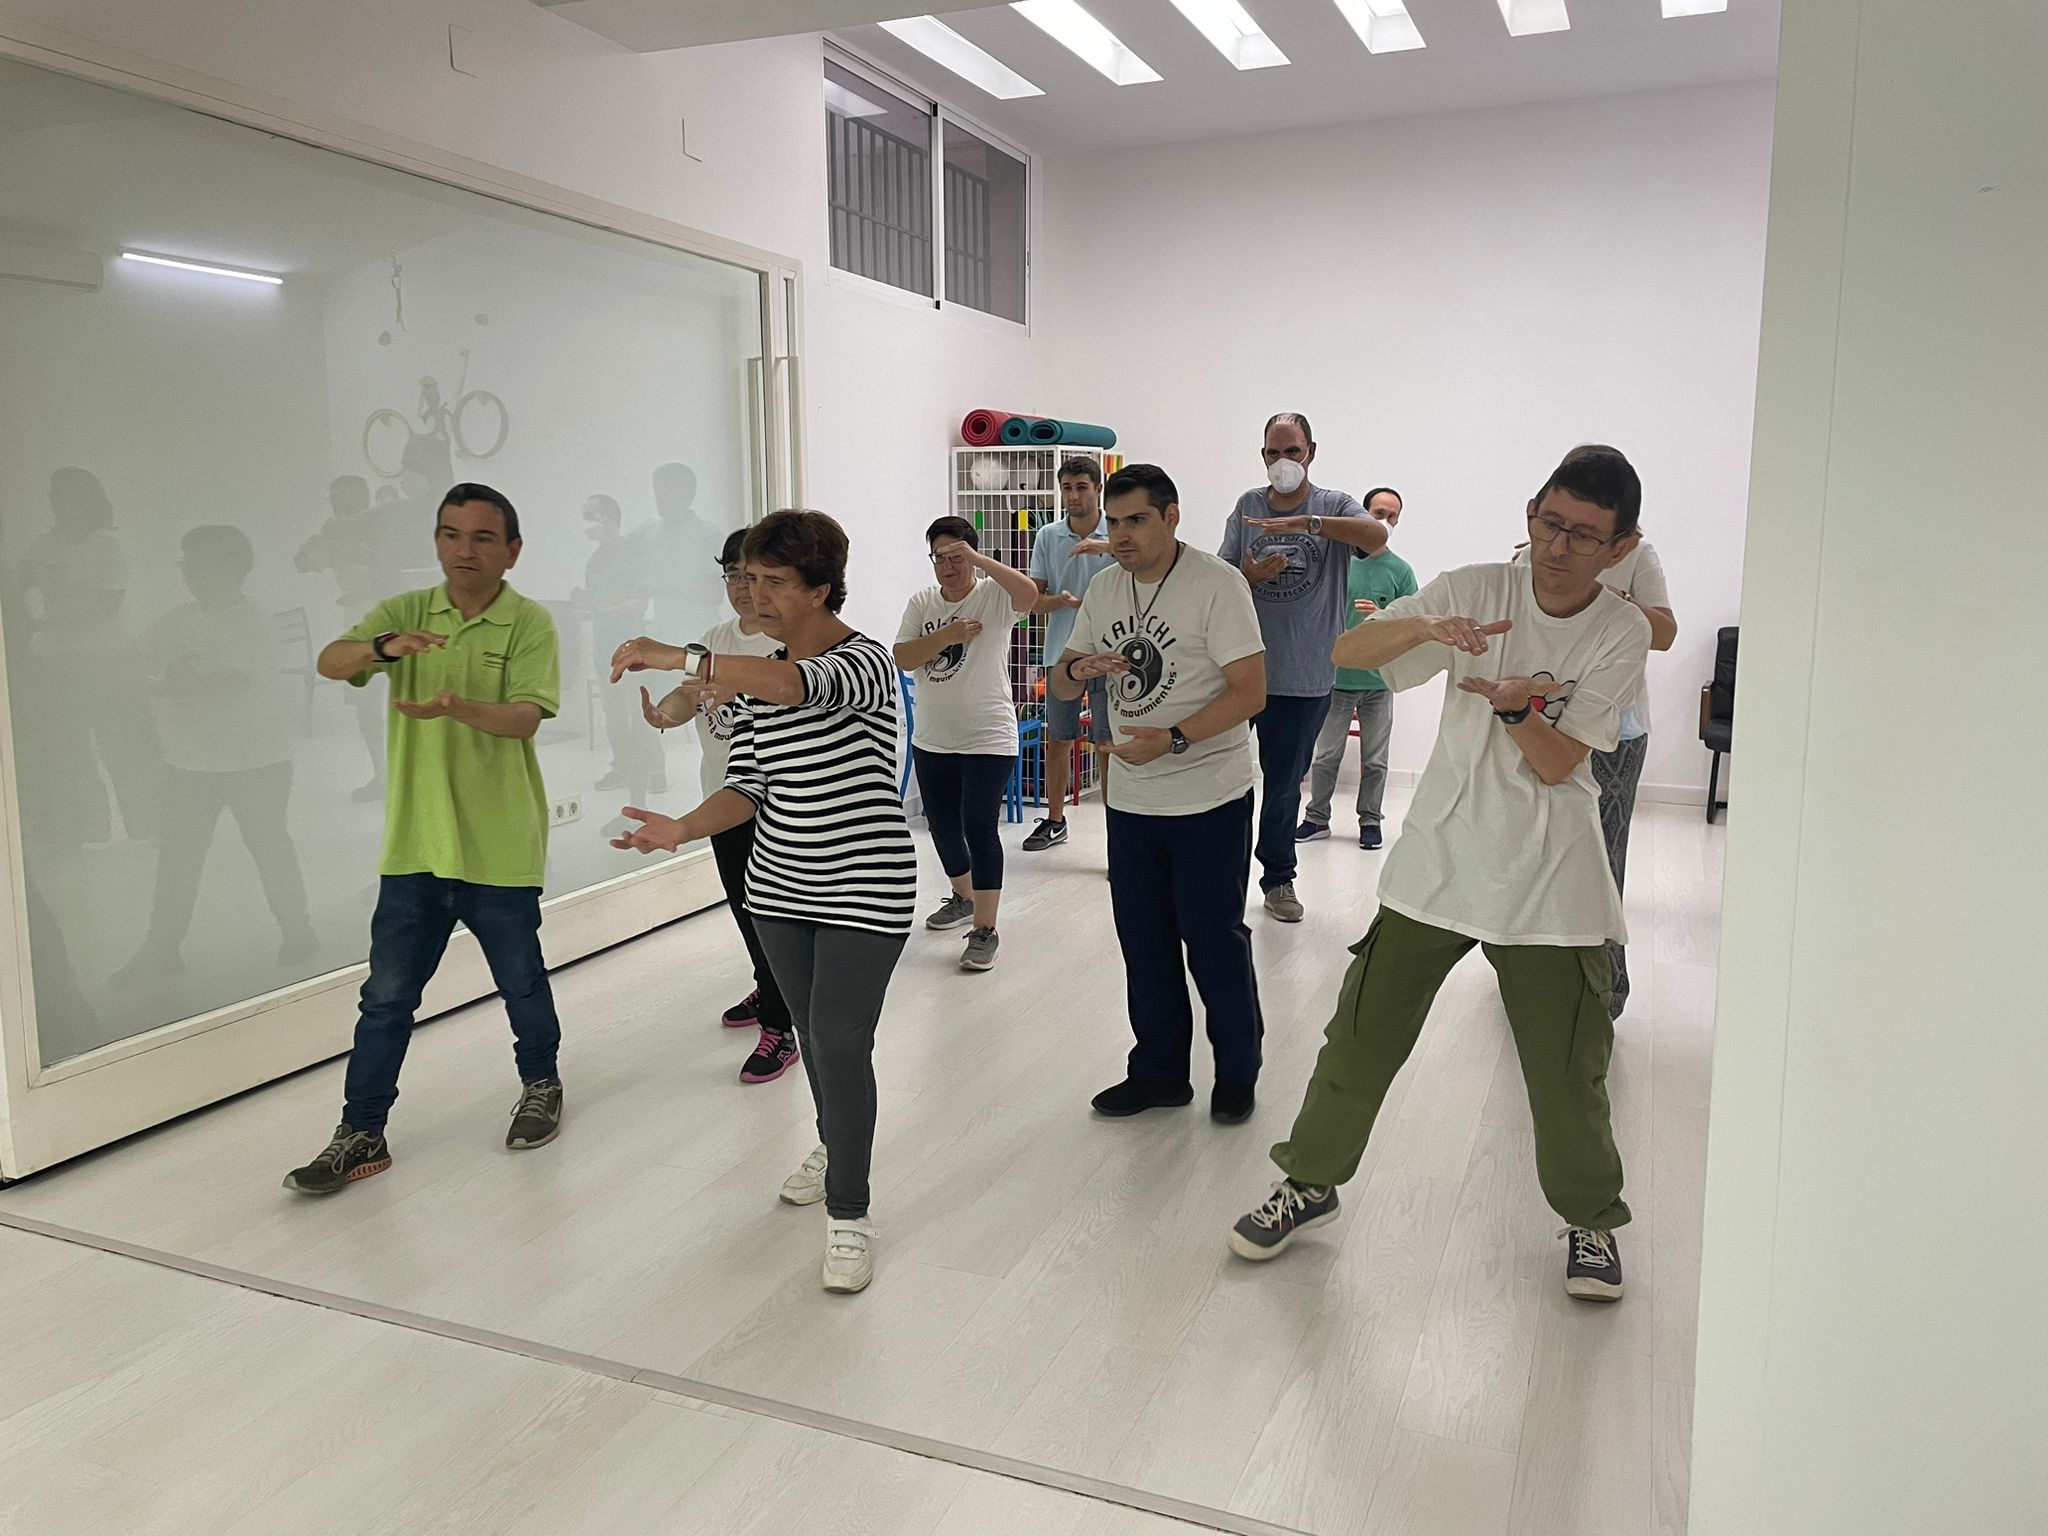 Taichí en Fundación AFIM Valencia: actividad física unida a estimulación cognitiva